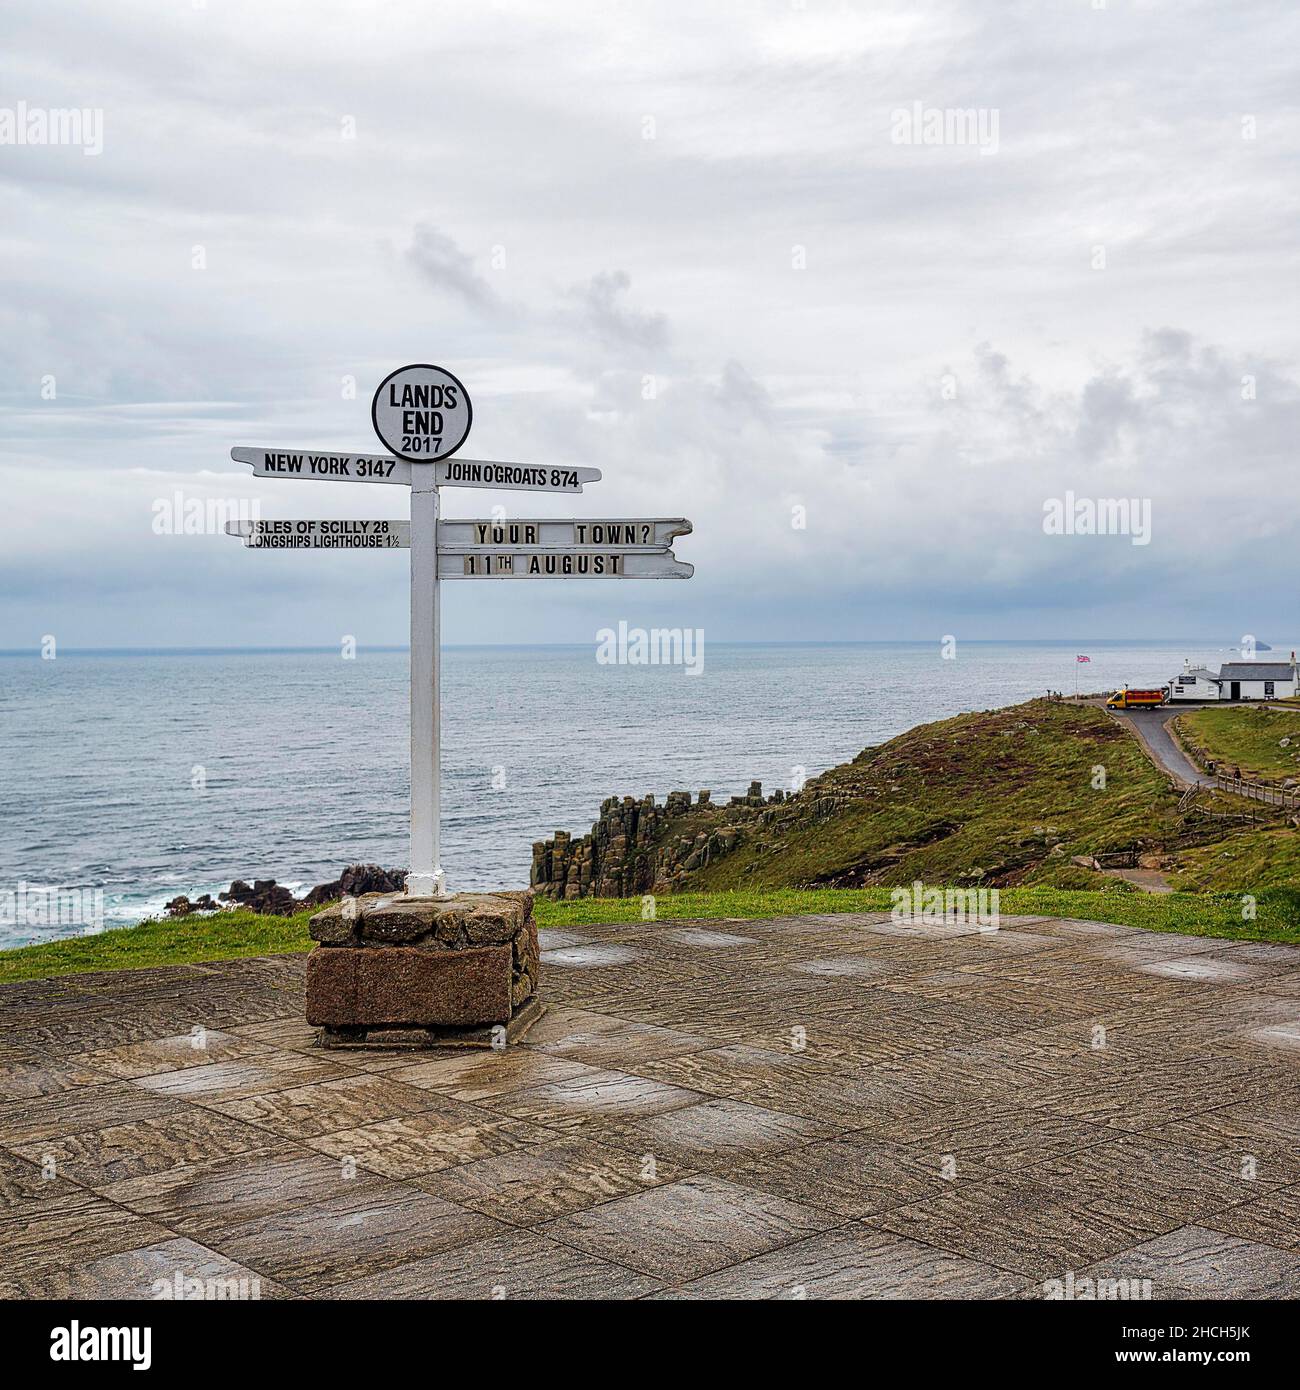 Signpost à New York, John o Groats et les îles de Scilly avec lettering Lands End, Penzance, Penwith Peninsula, Cornouailles, Angleterre,Grande-Bretagne Banque D'Images